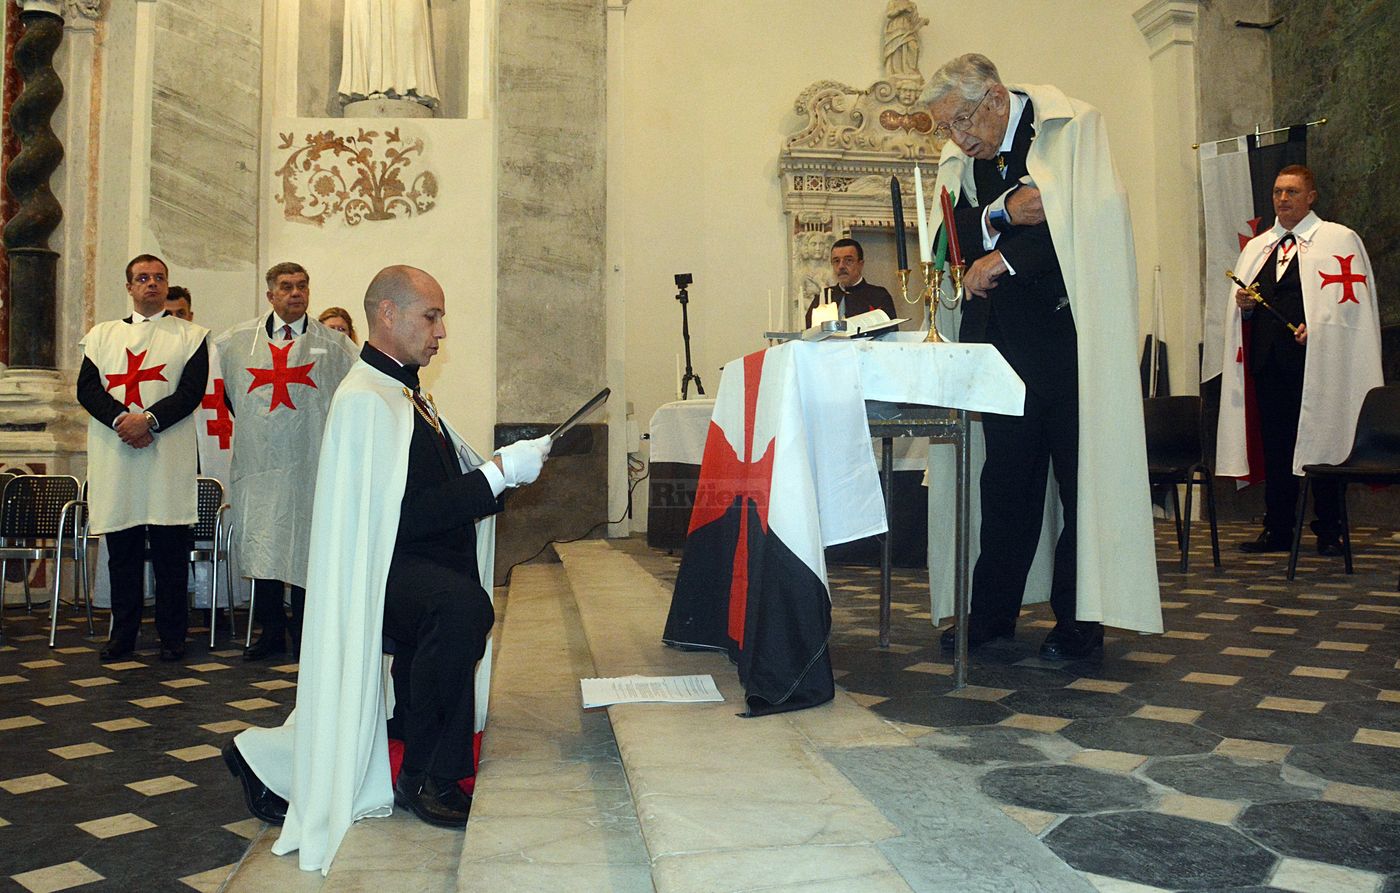 Cavalieri Templari ex chiesa San Francesco Ventimiglia 1 dicembre 2018_36